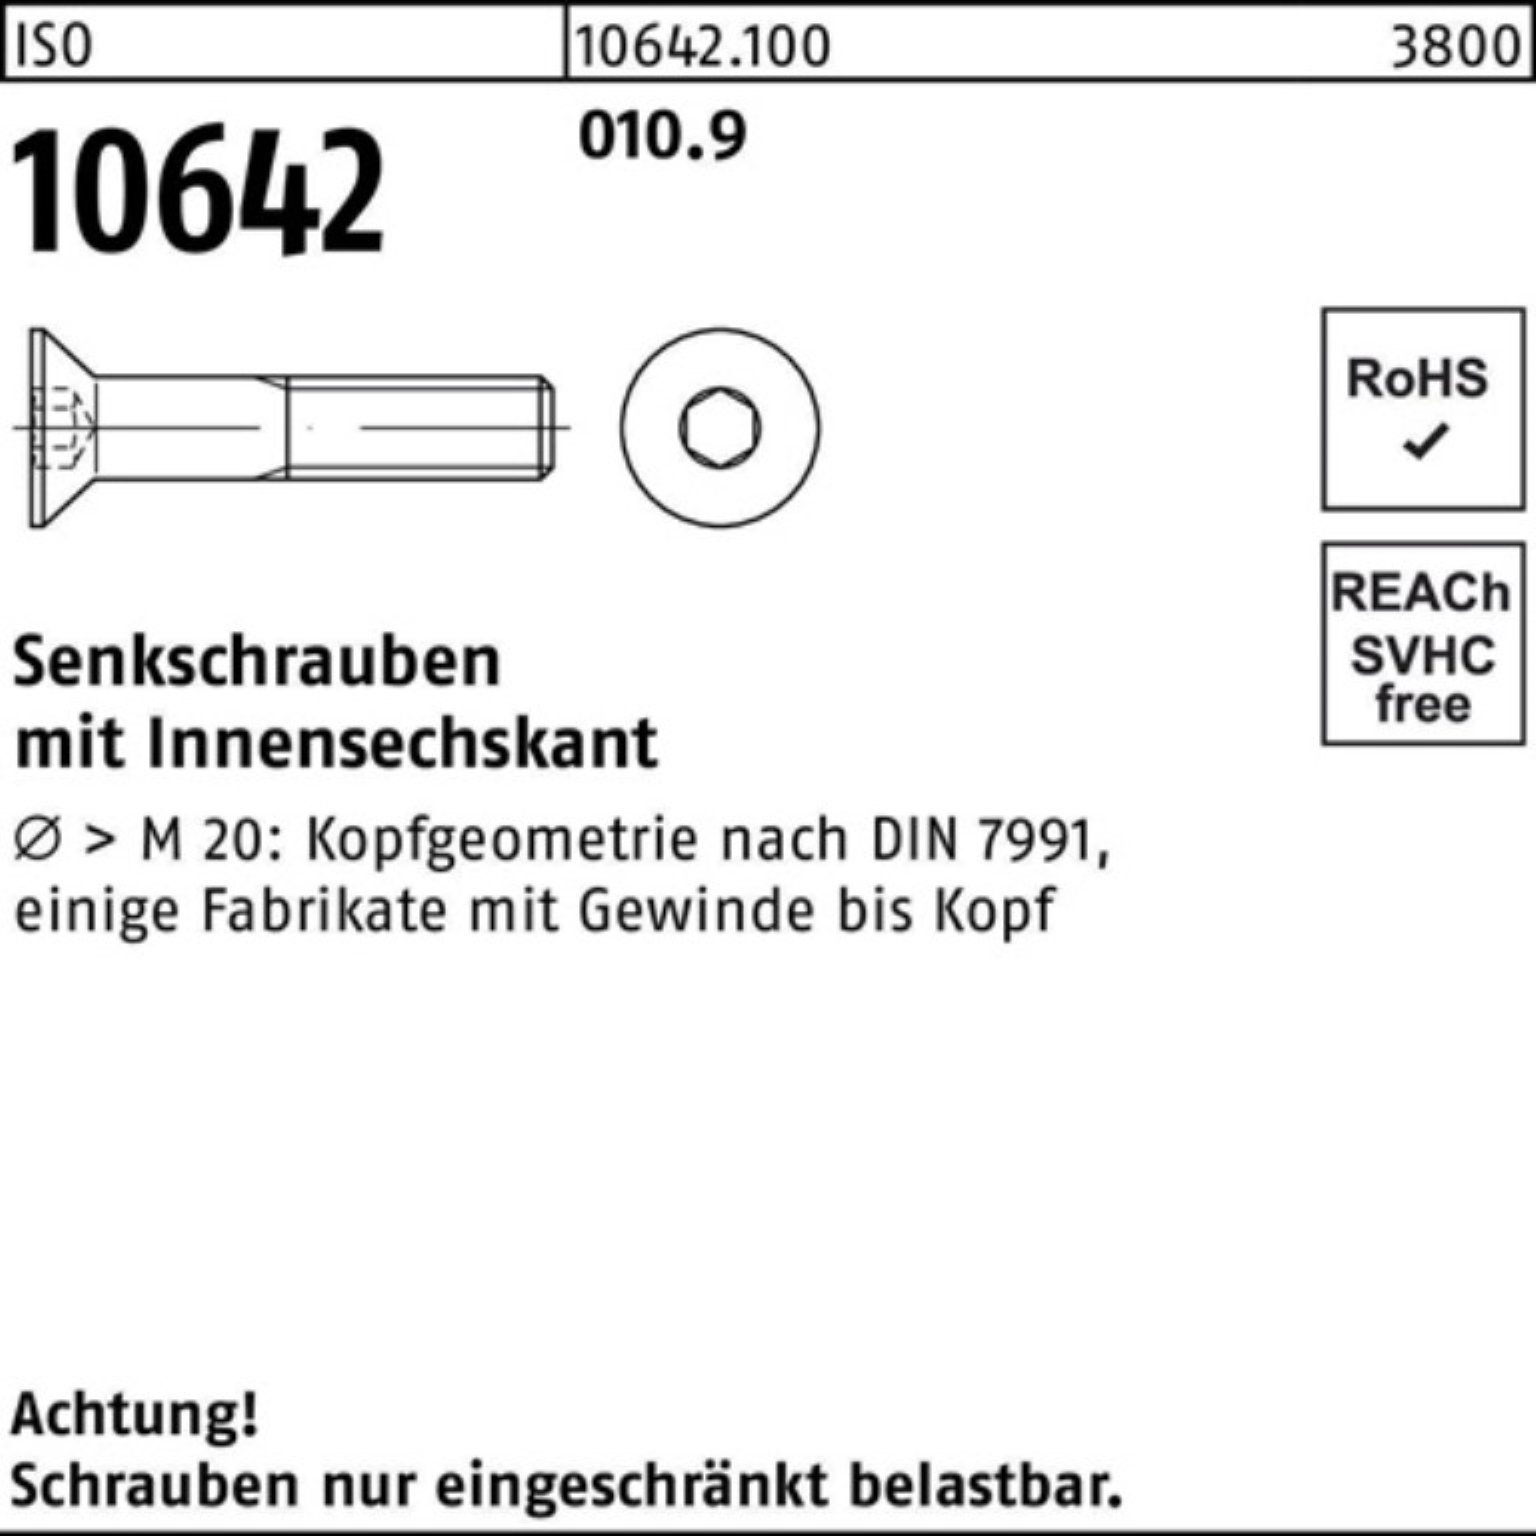 Reyher Stück IS 200 Senkschraube M6x Pack ISO 010.9 40 10642 Innen-6kt 200er Senkschraube